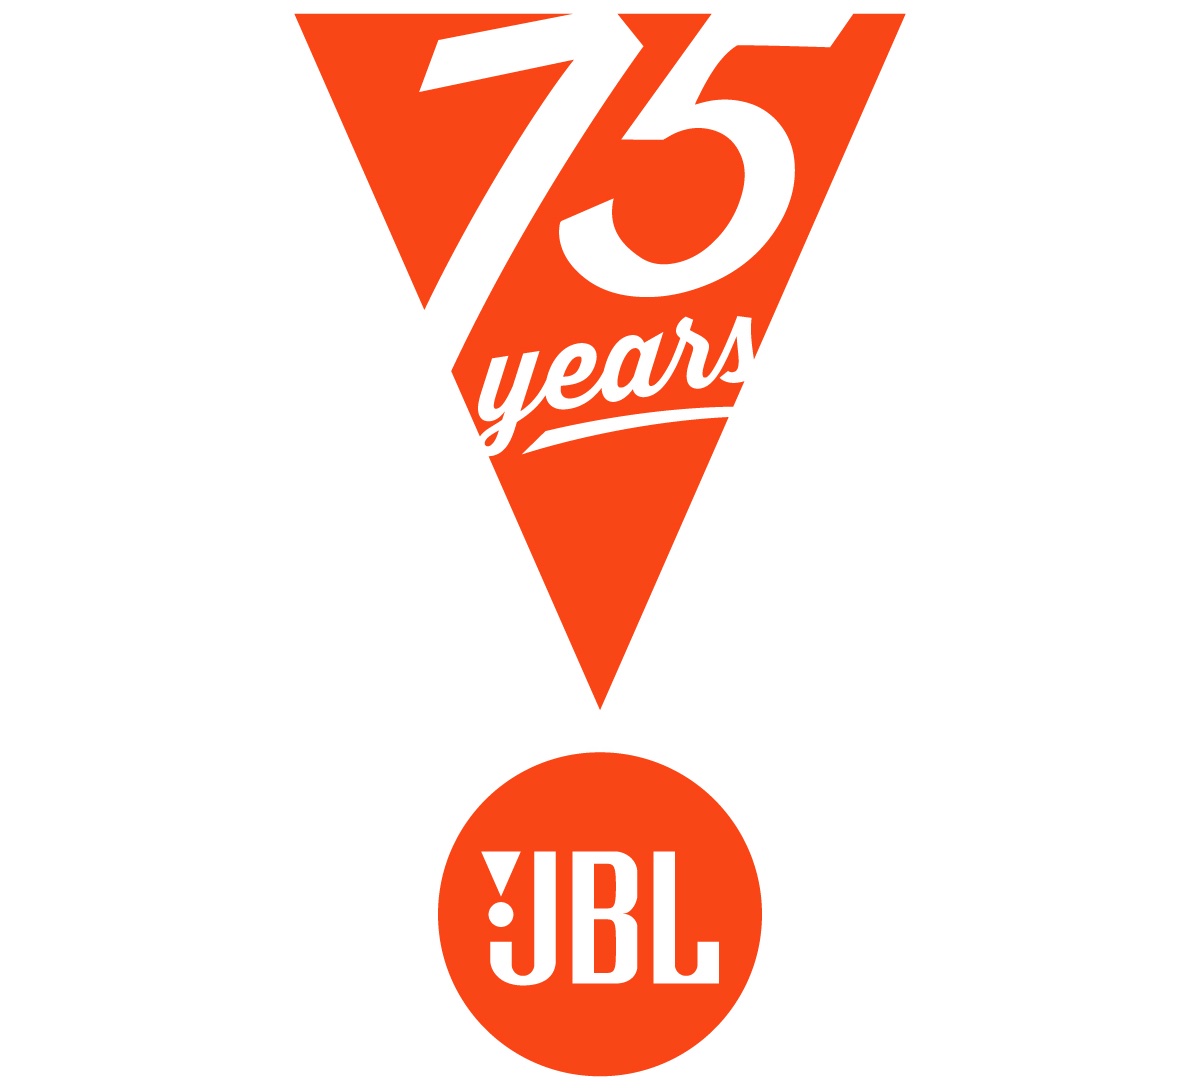 JBL celebra 75 anni di eccellenza audio